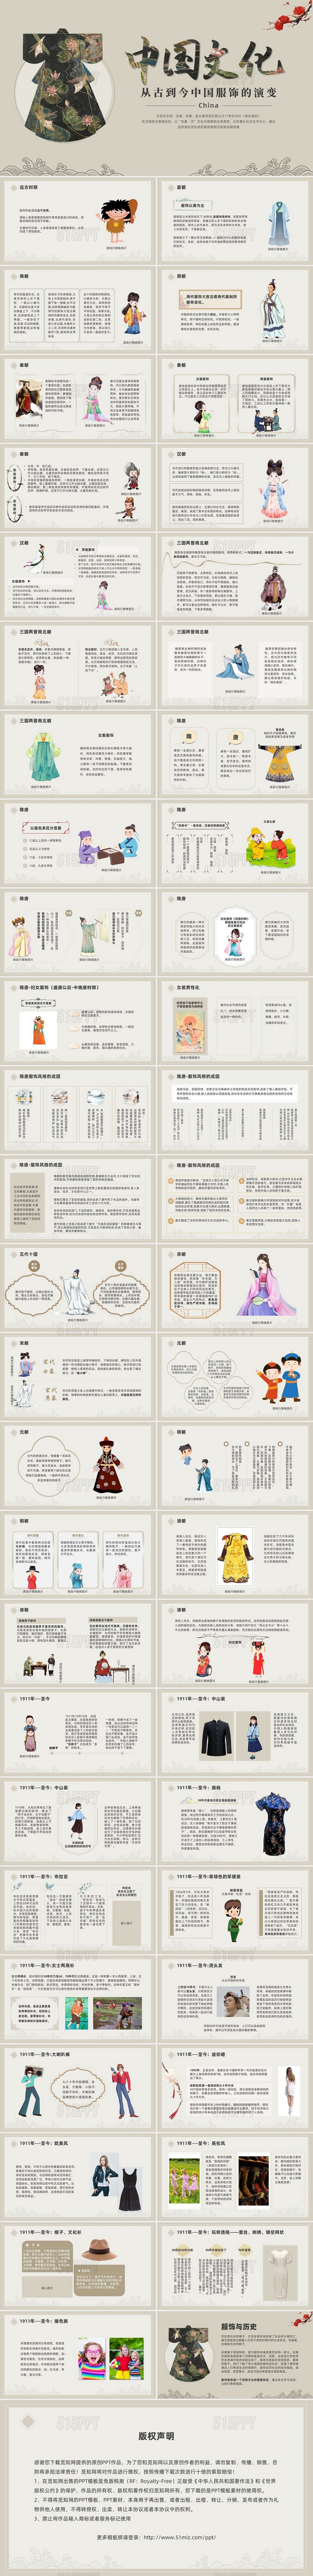 复古风格中国文化之中国服饰演变史课件PPT模板中国服饰的演变